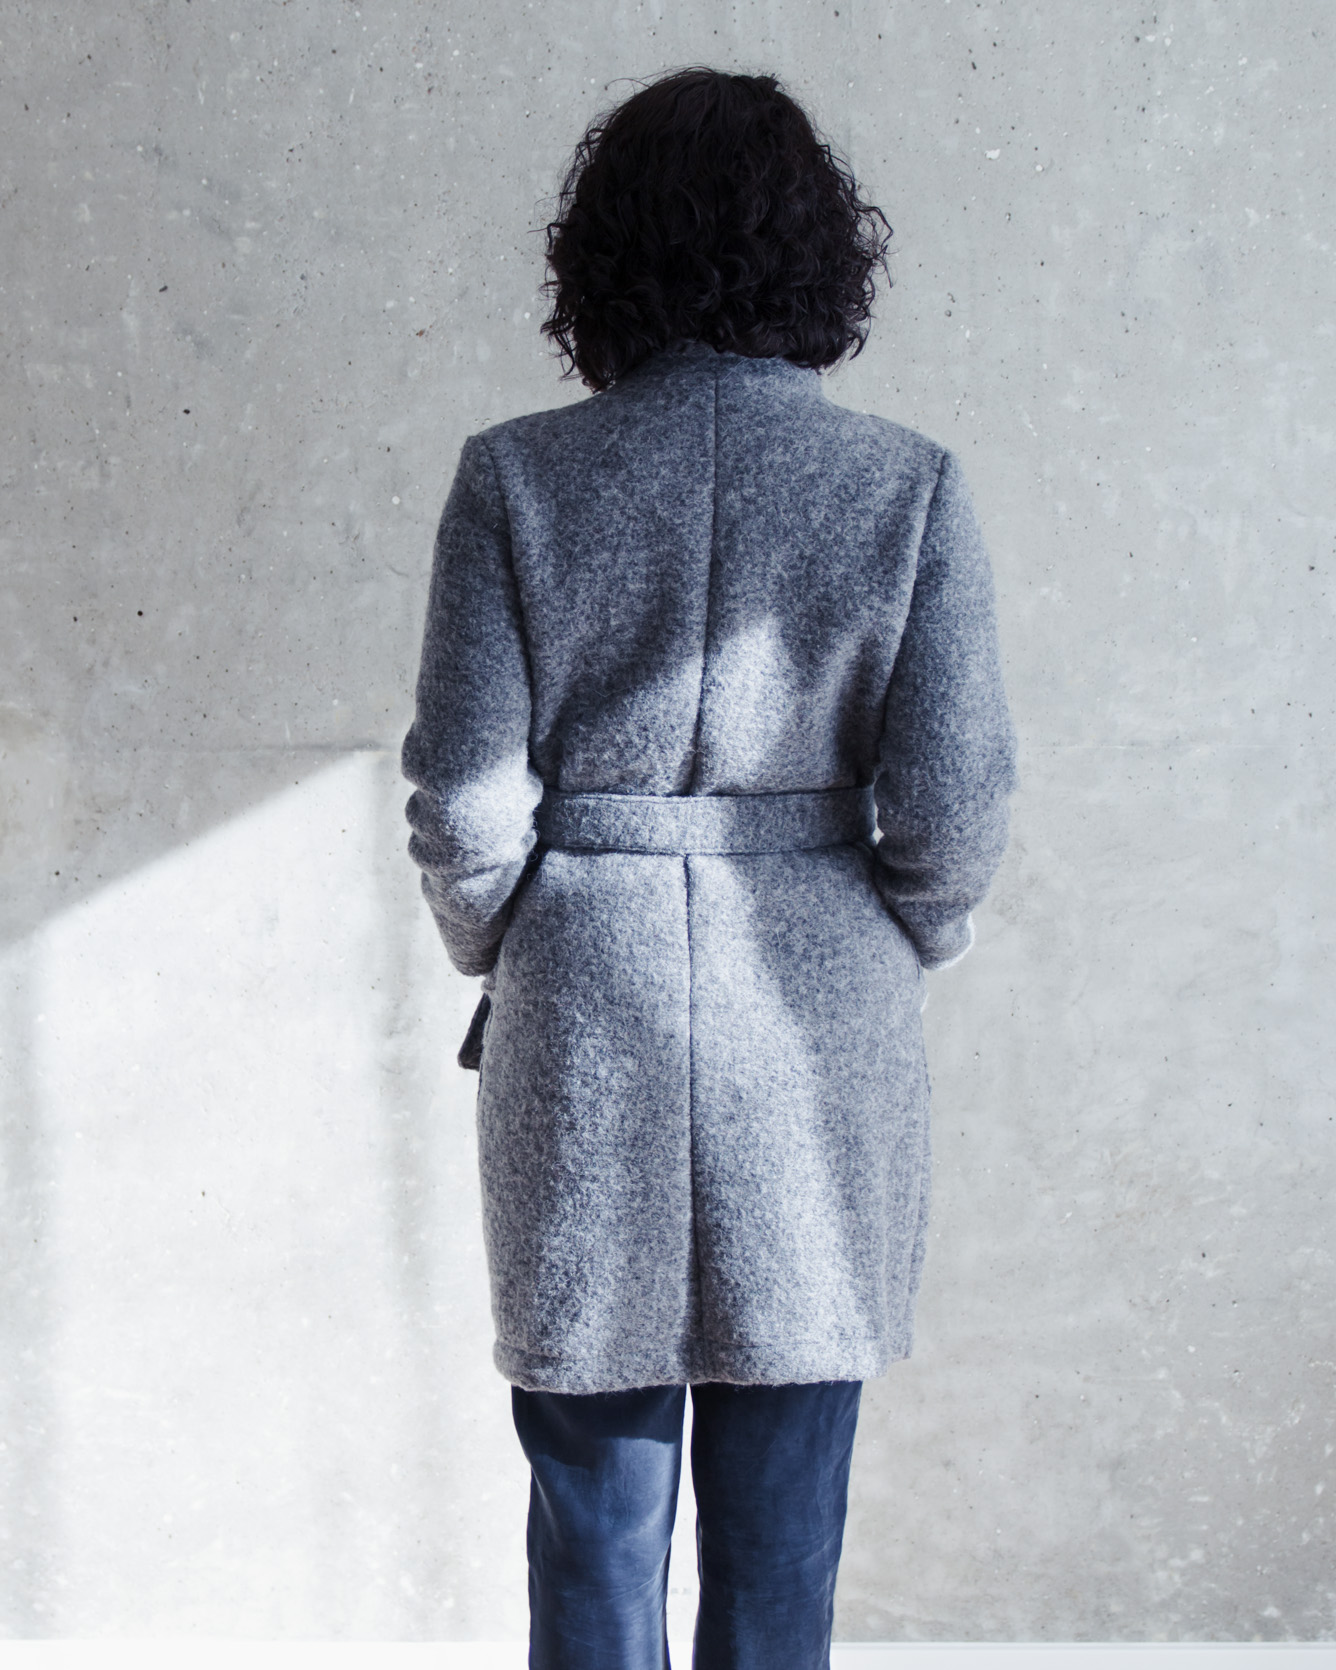 Schnittduett - Schnittmuster Mantel Wrapped - Einfachen Mantel zum Wickeln nähen - Wir bieten moderne Schnittmuster für Damen